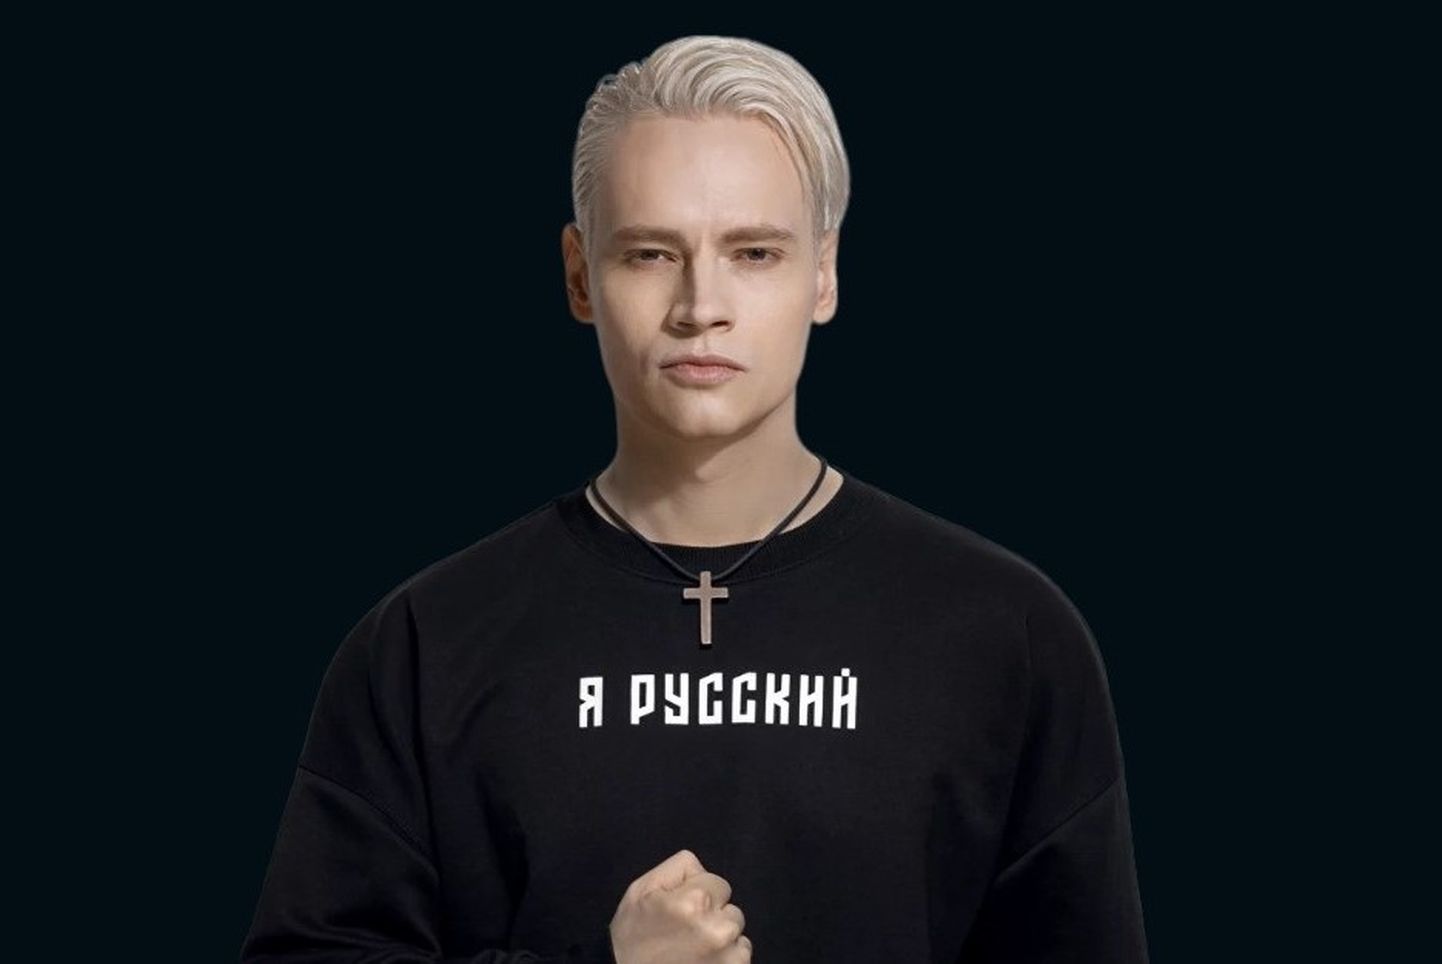 Российский певец Ярослов Дронов он же SHAMAN. В первую очередь известен песней "Я - русский", которая в условиях войны России с Украиной стала одним из элементов кремлевской пропаганды.